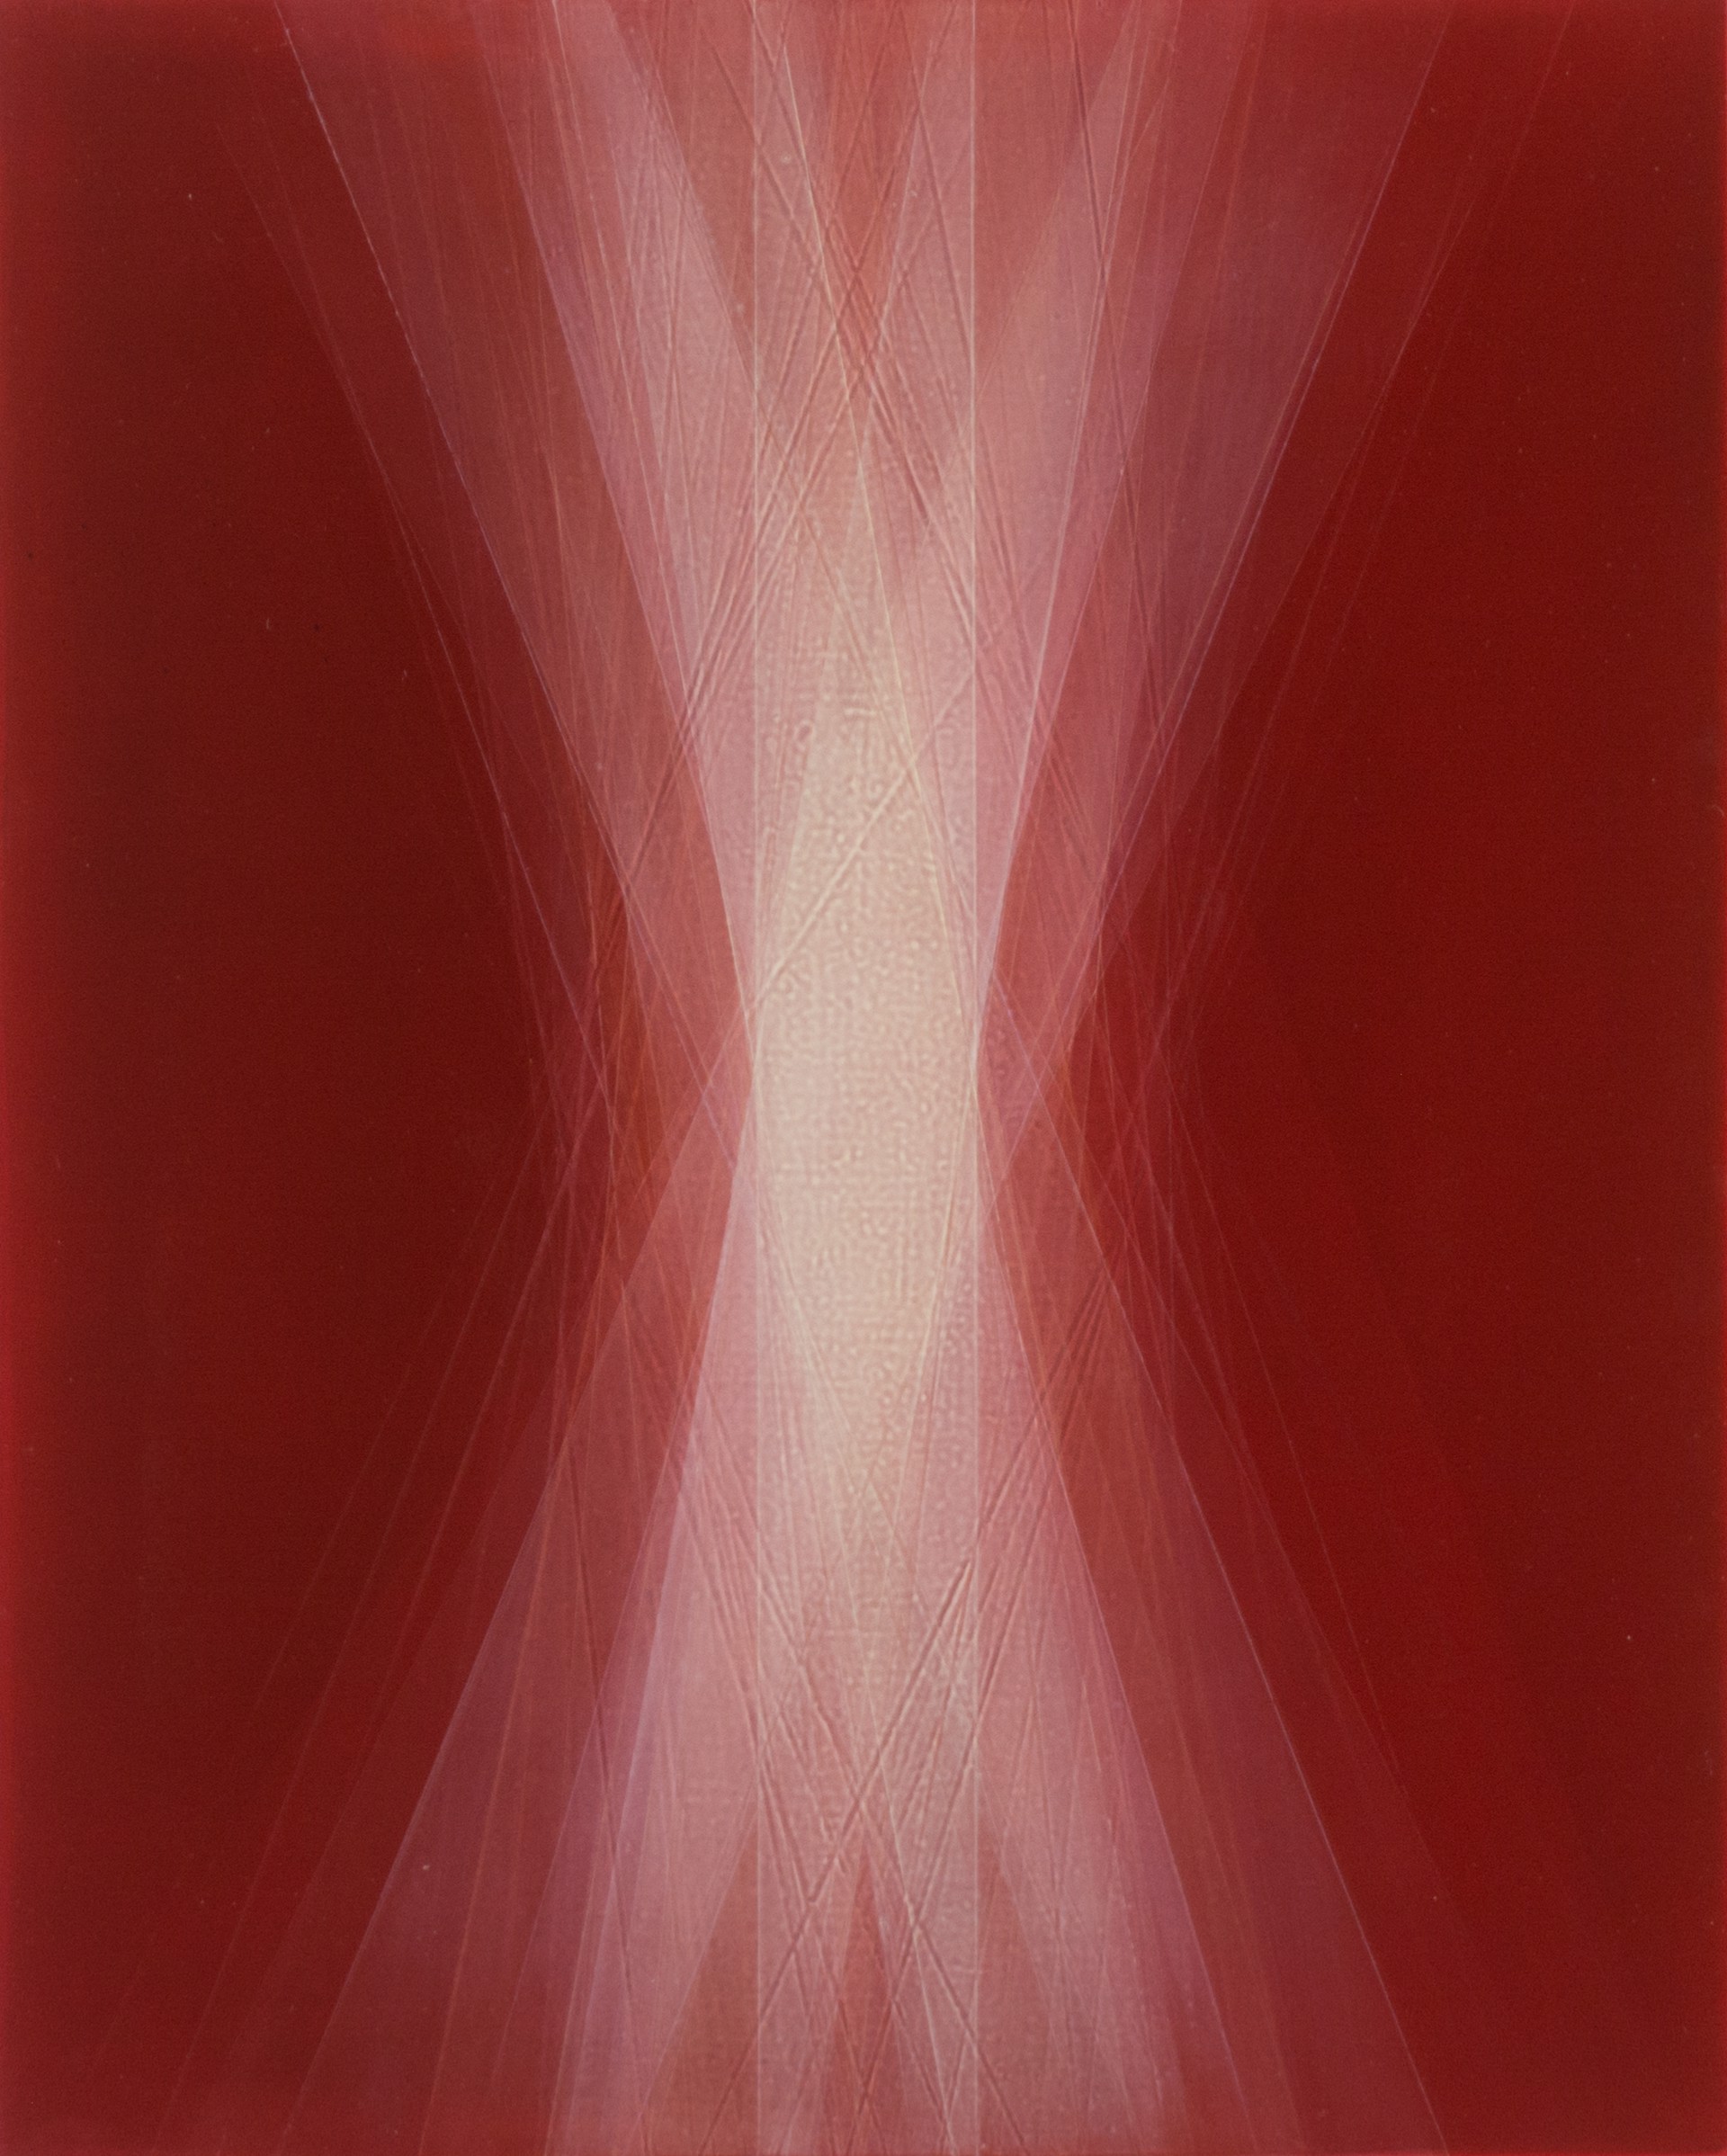 Spaces in Between (Cadmium Deep Red) by Bernadette Jiyong Frank